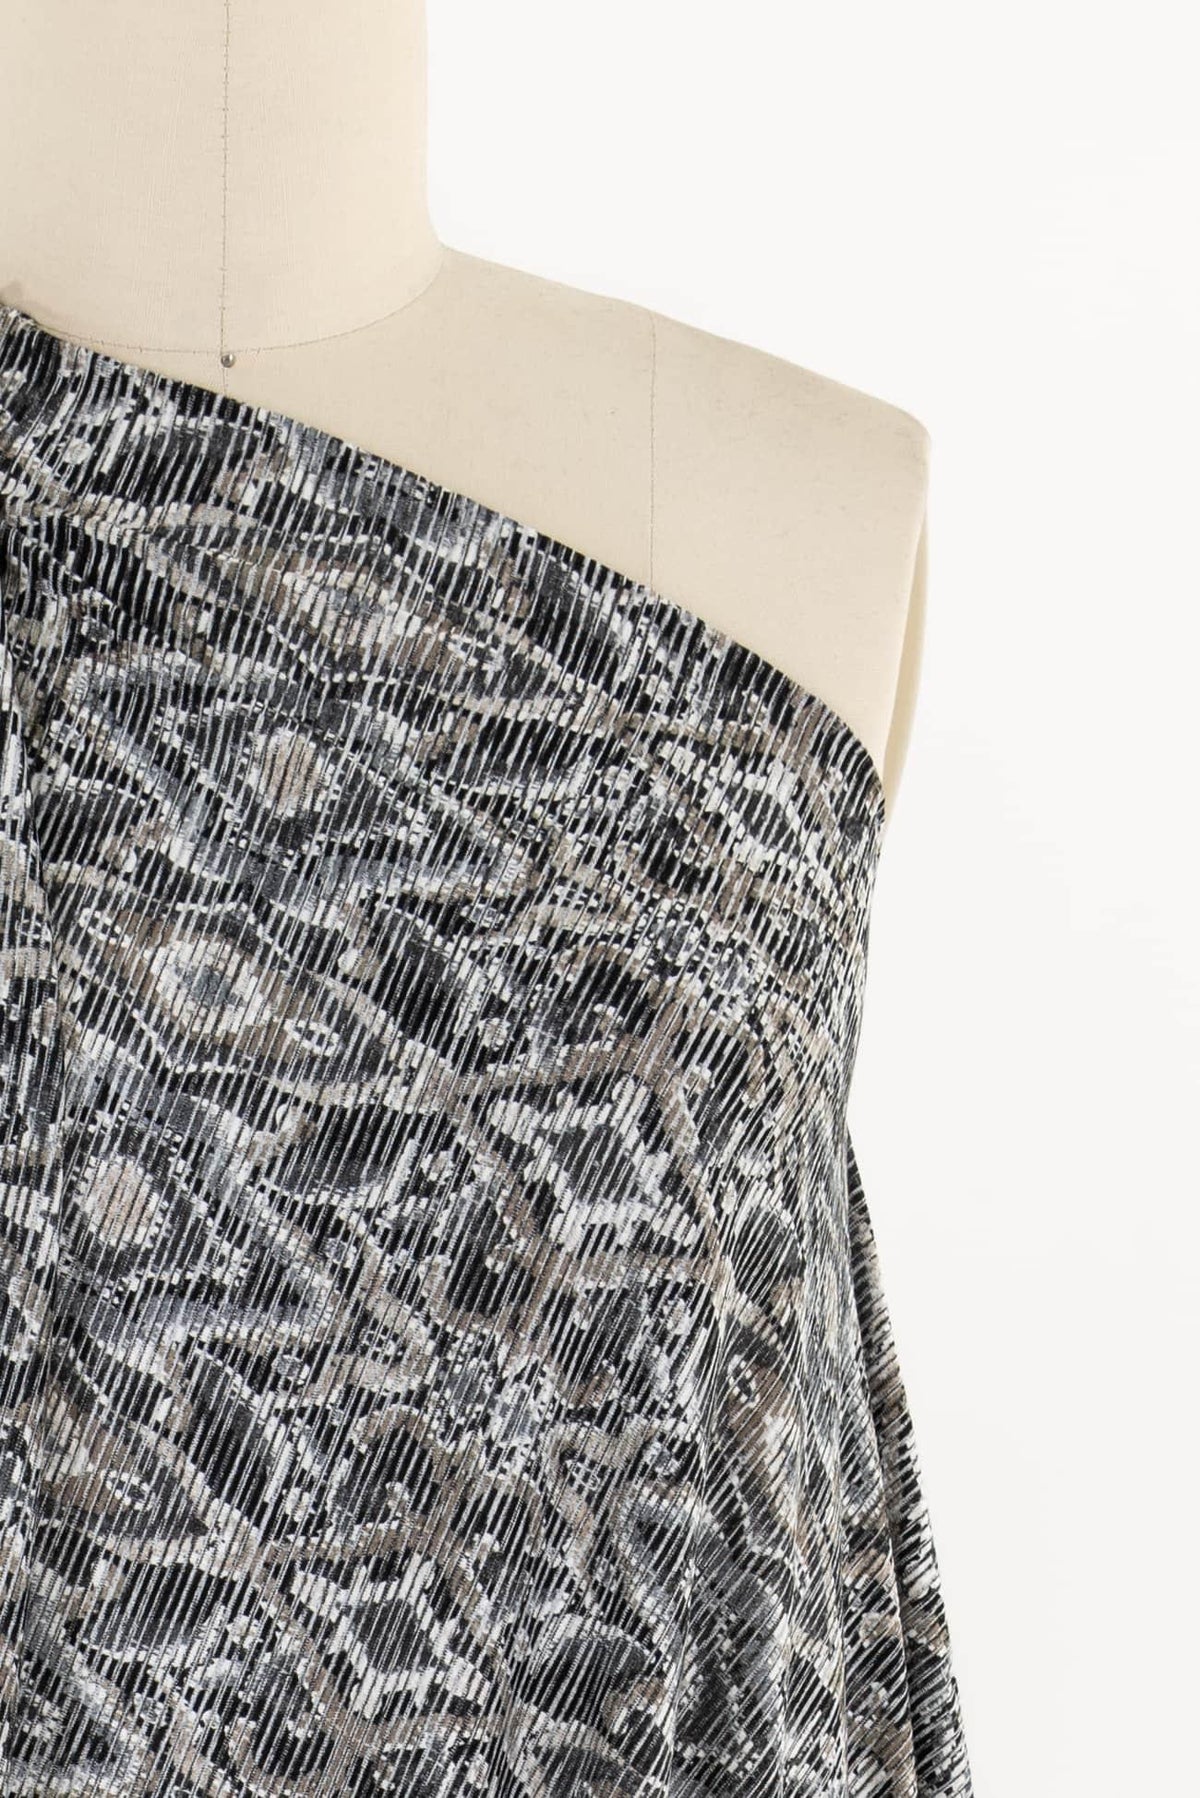 Backroads Viscose/Poly Knit - Marcy Tilton Fabrics